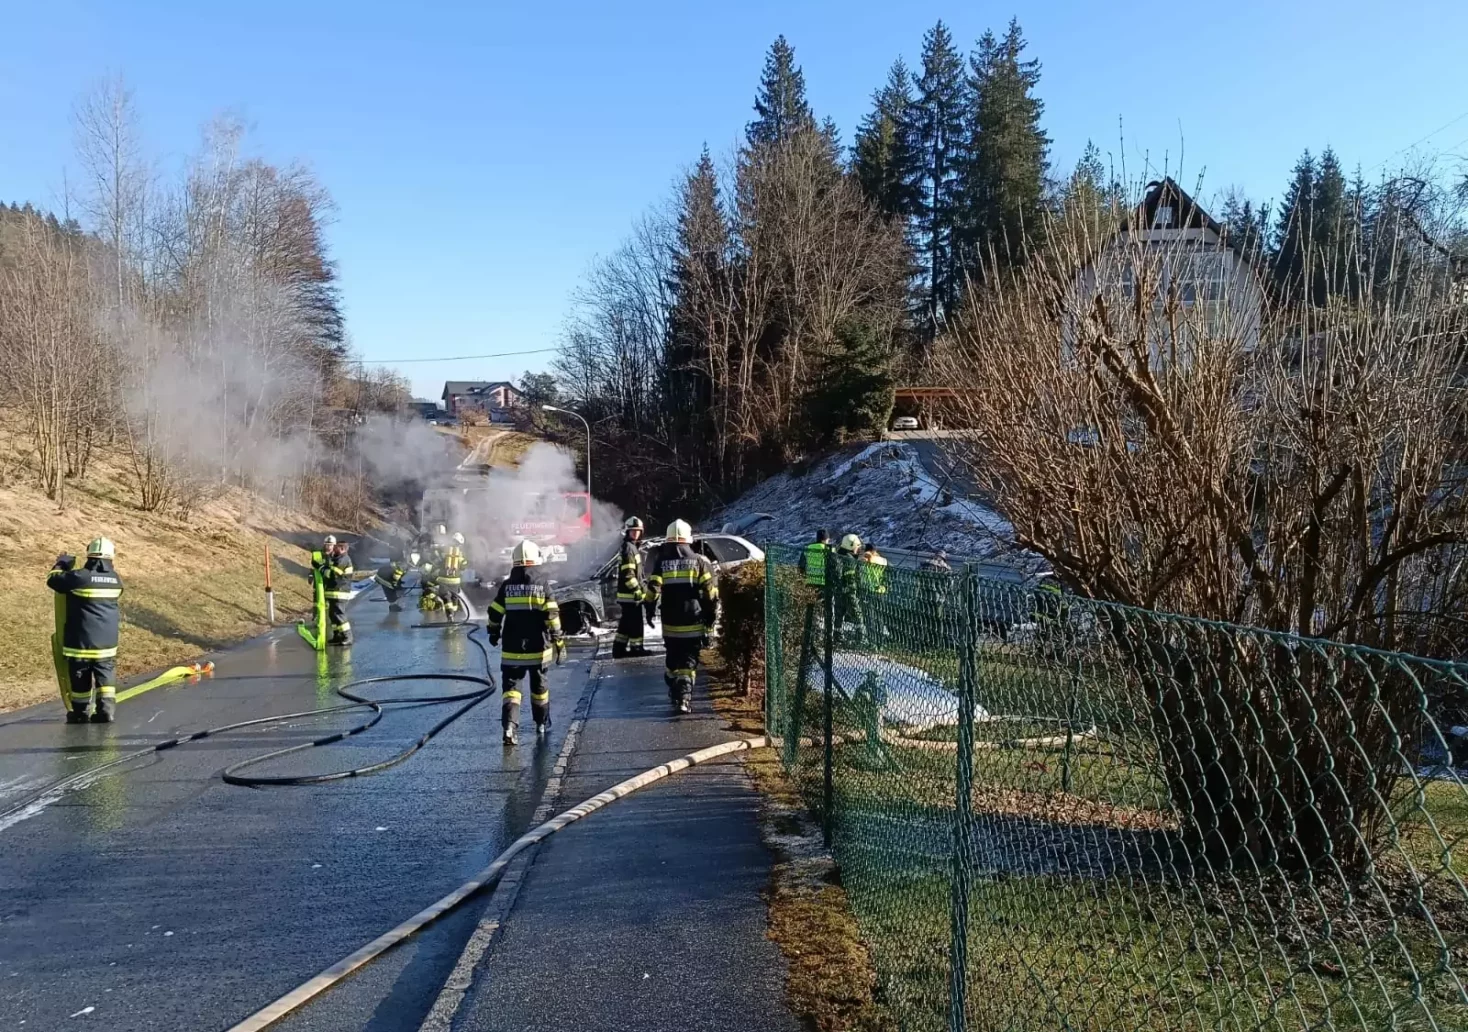 PKW brannte lichterloh: Lenker konnte sich noch vor Flammen retten